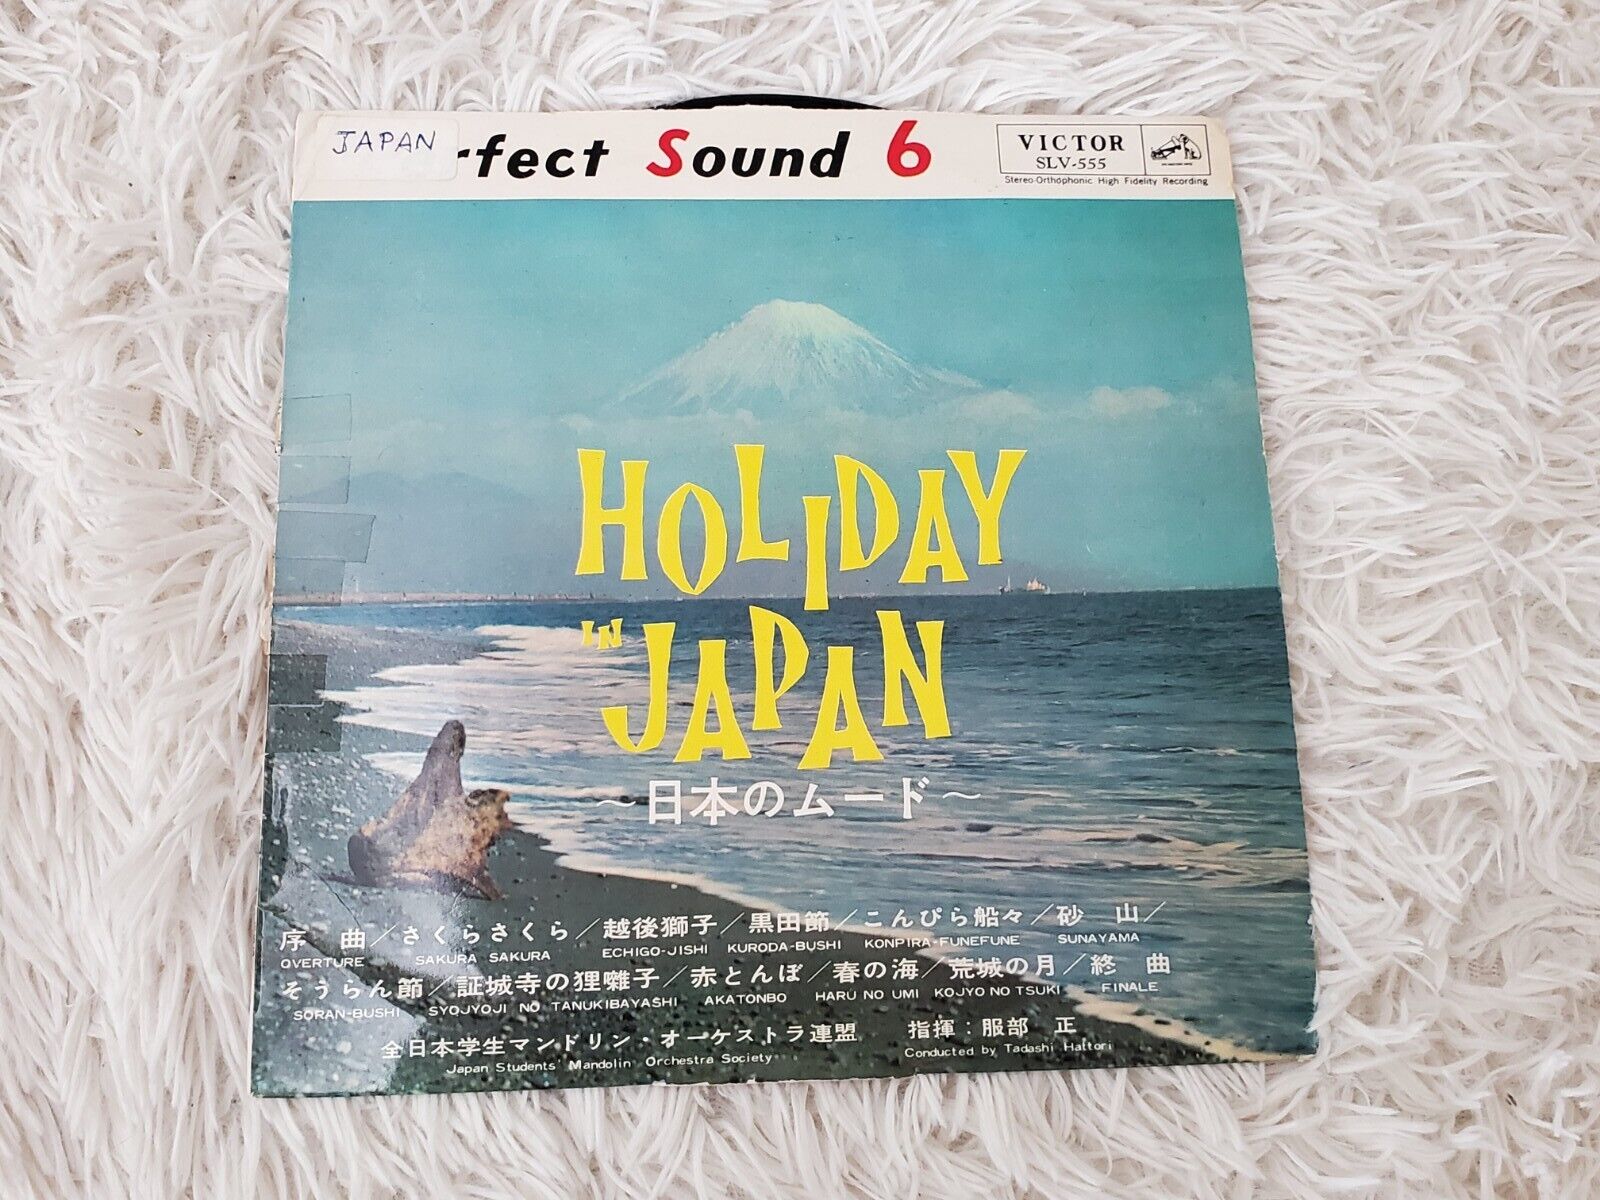 1962 HOLIDAY IN JAPAN LP VINYL RECORD SAKURA KURODA-BUSHI SUNAYAMA ANTIQUE VTG